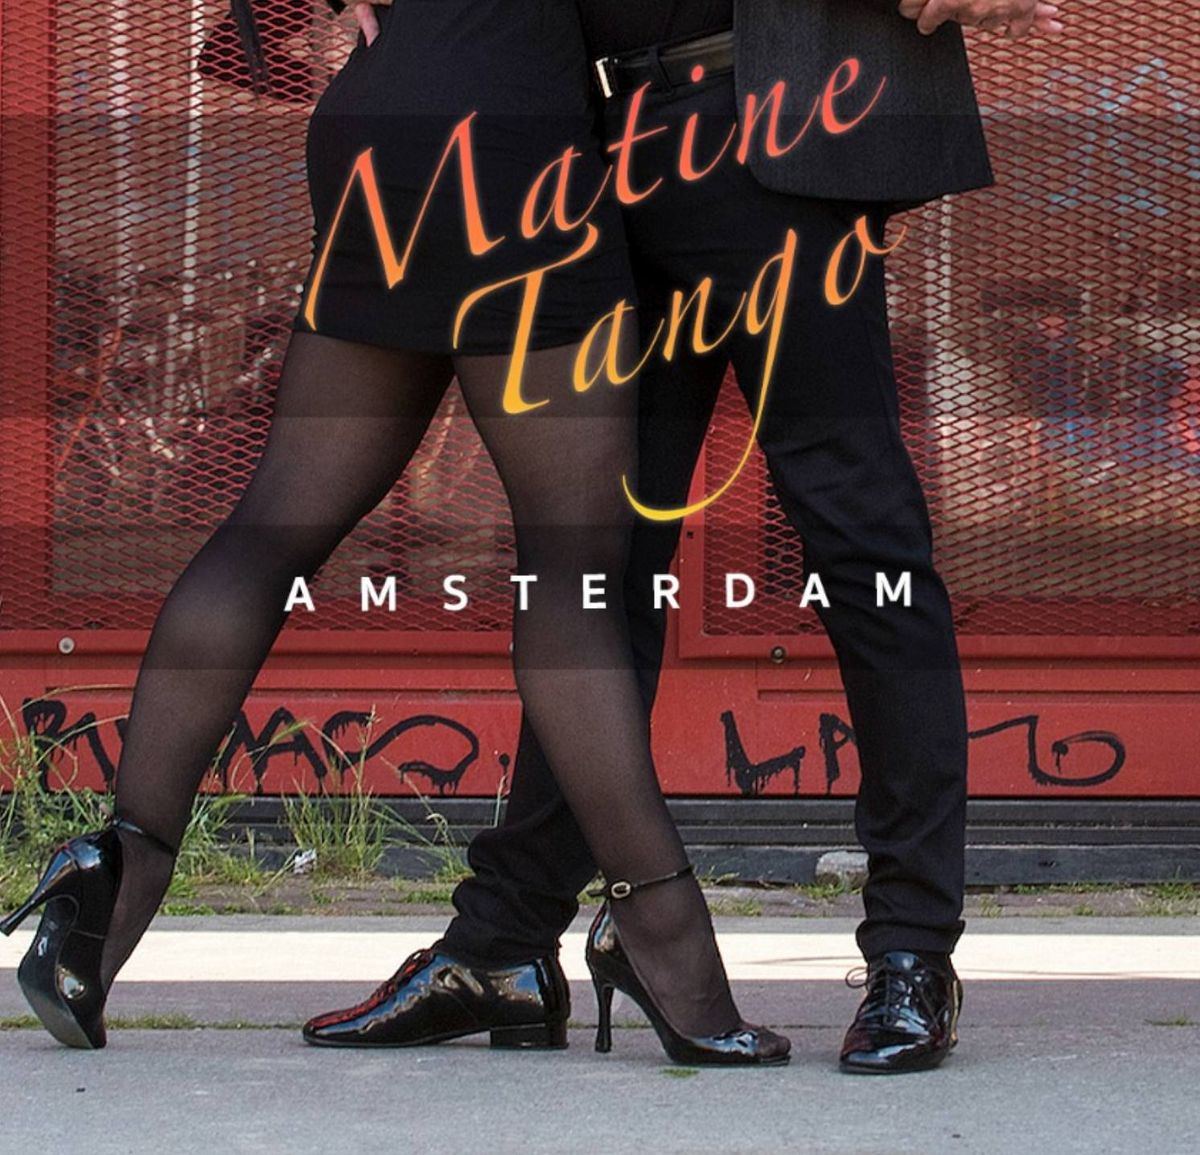 Matine Tango Amsterdam